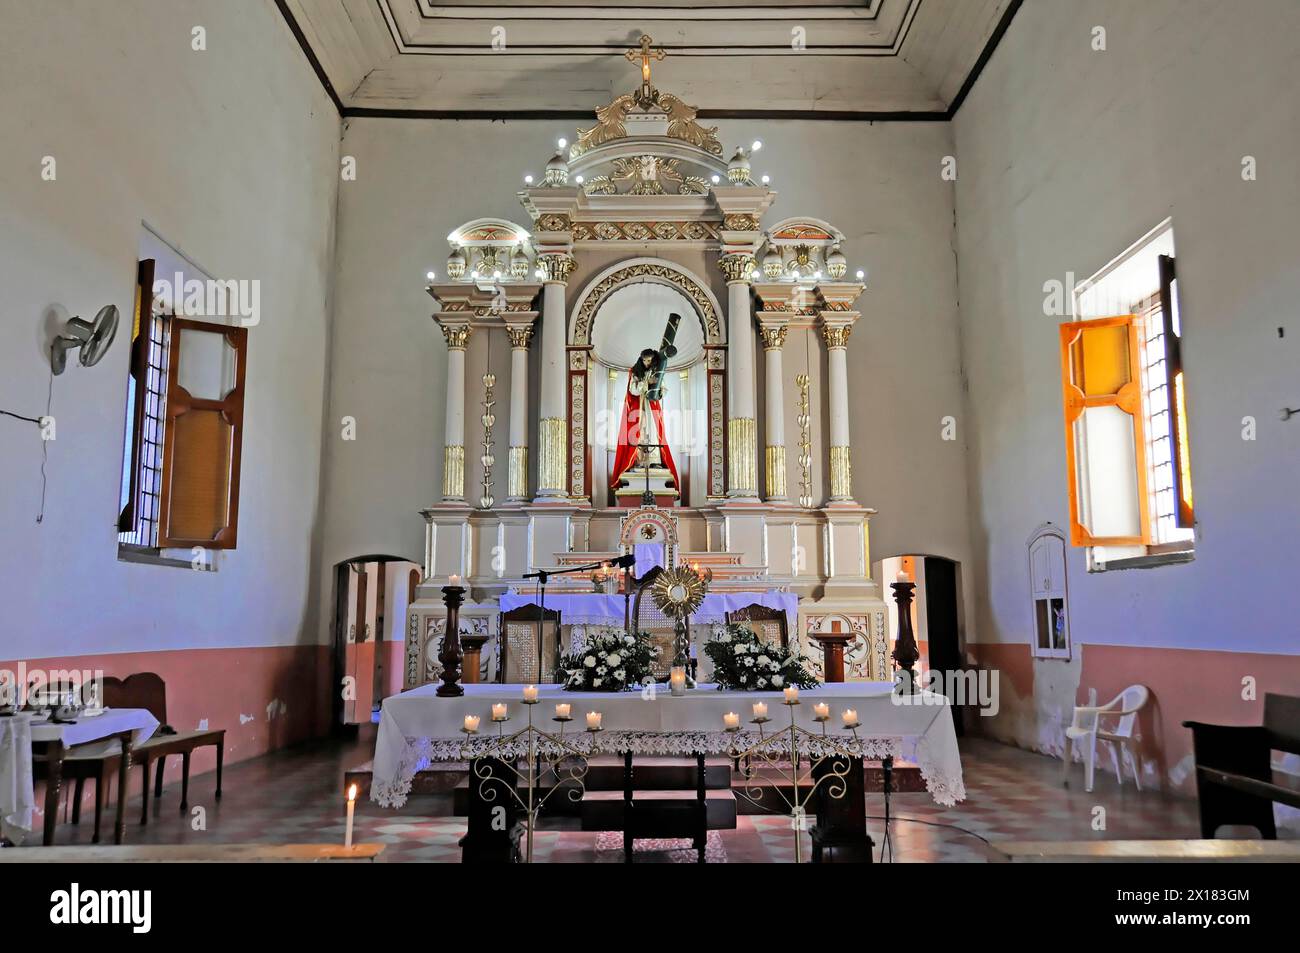 Église El Calvario, Léon, Nicaragua, autel avec une statue de Jésus entourée de bougies dans une église, Nocaragua, Amérique centrale, Amérique centrale Banque D'Images